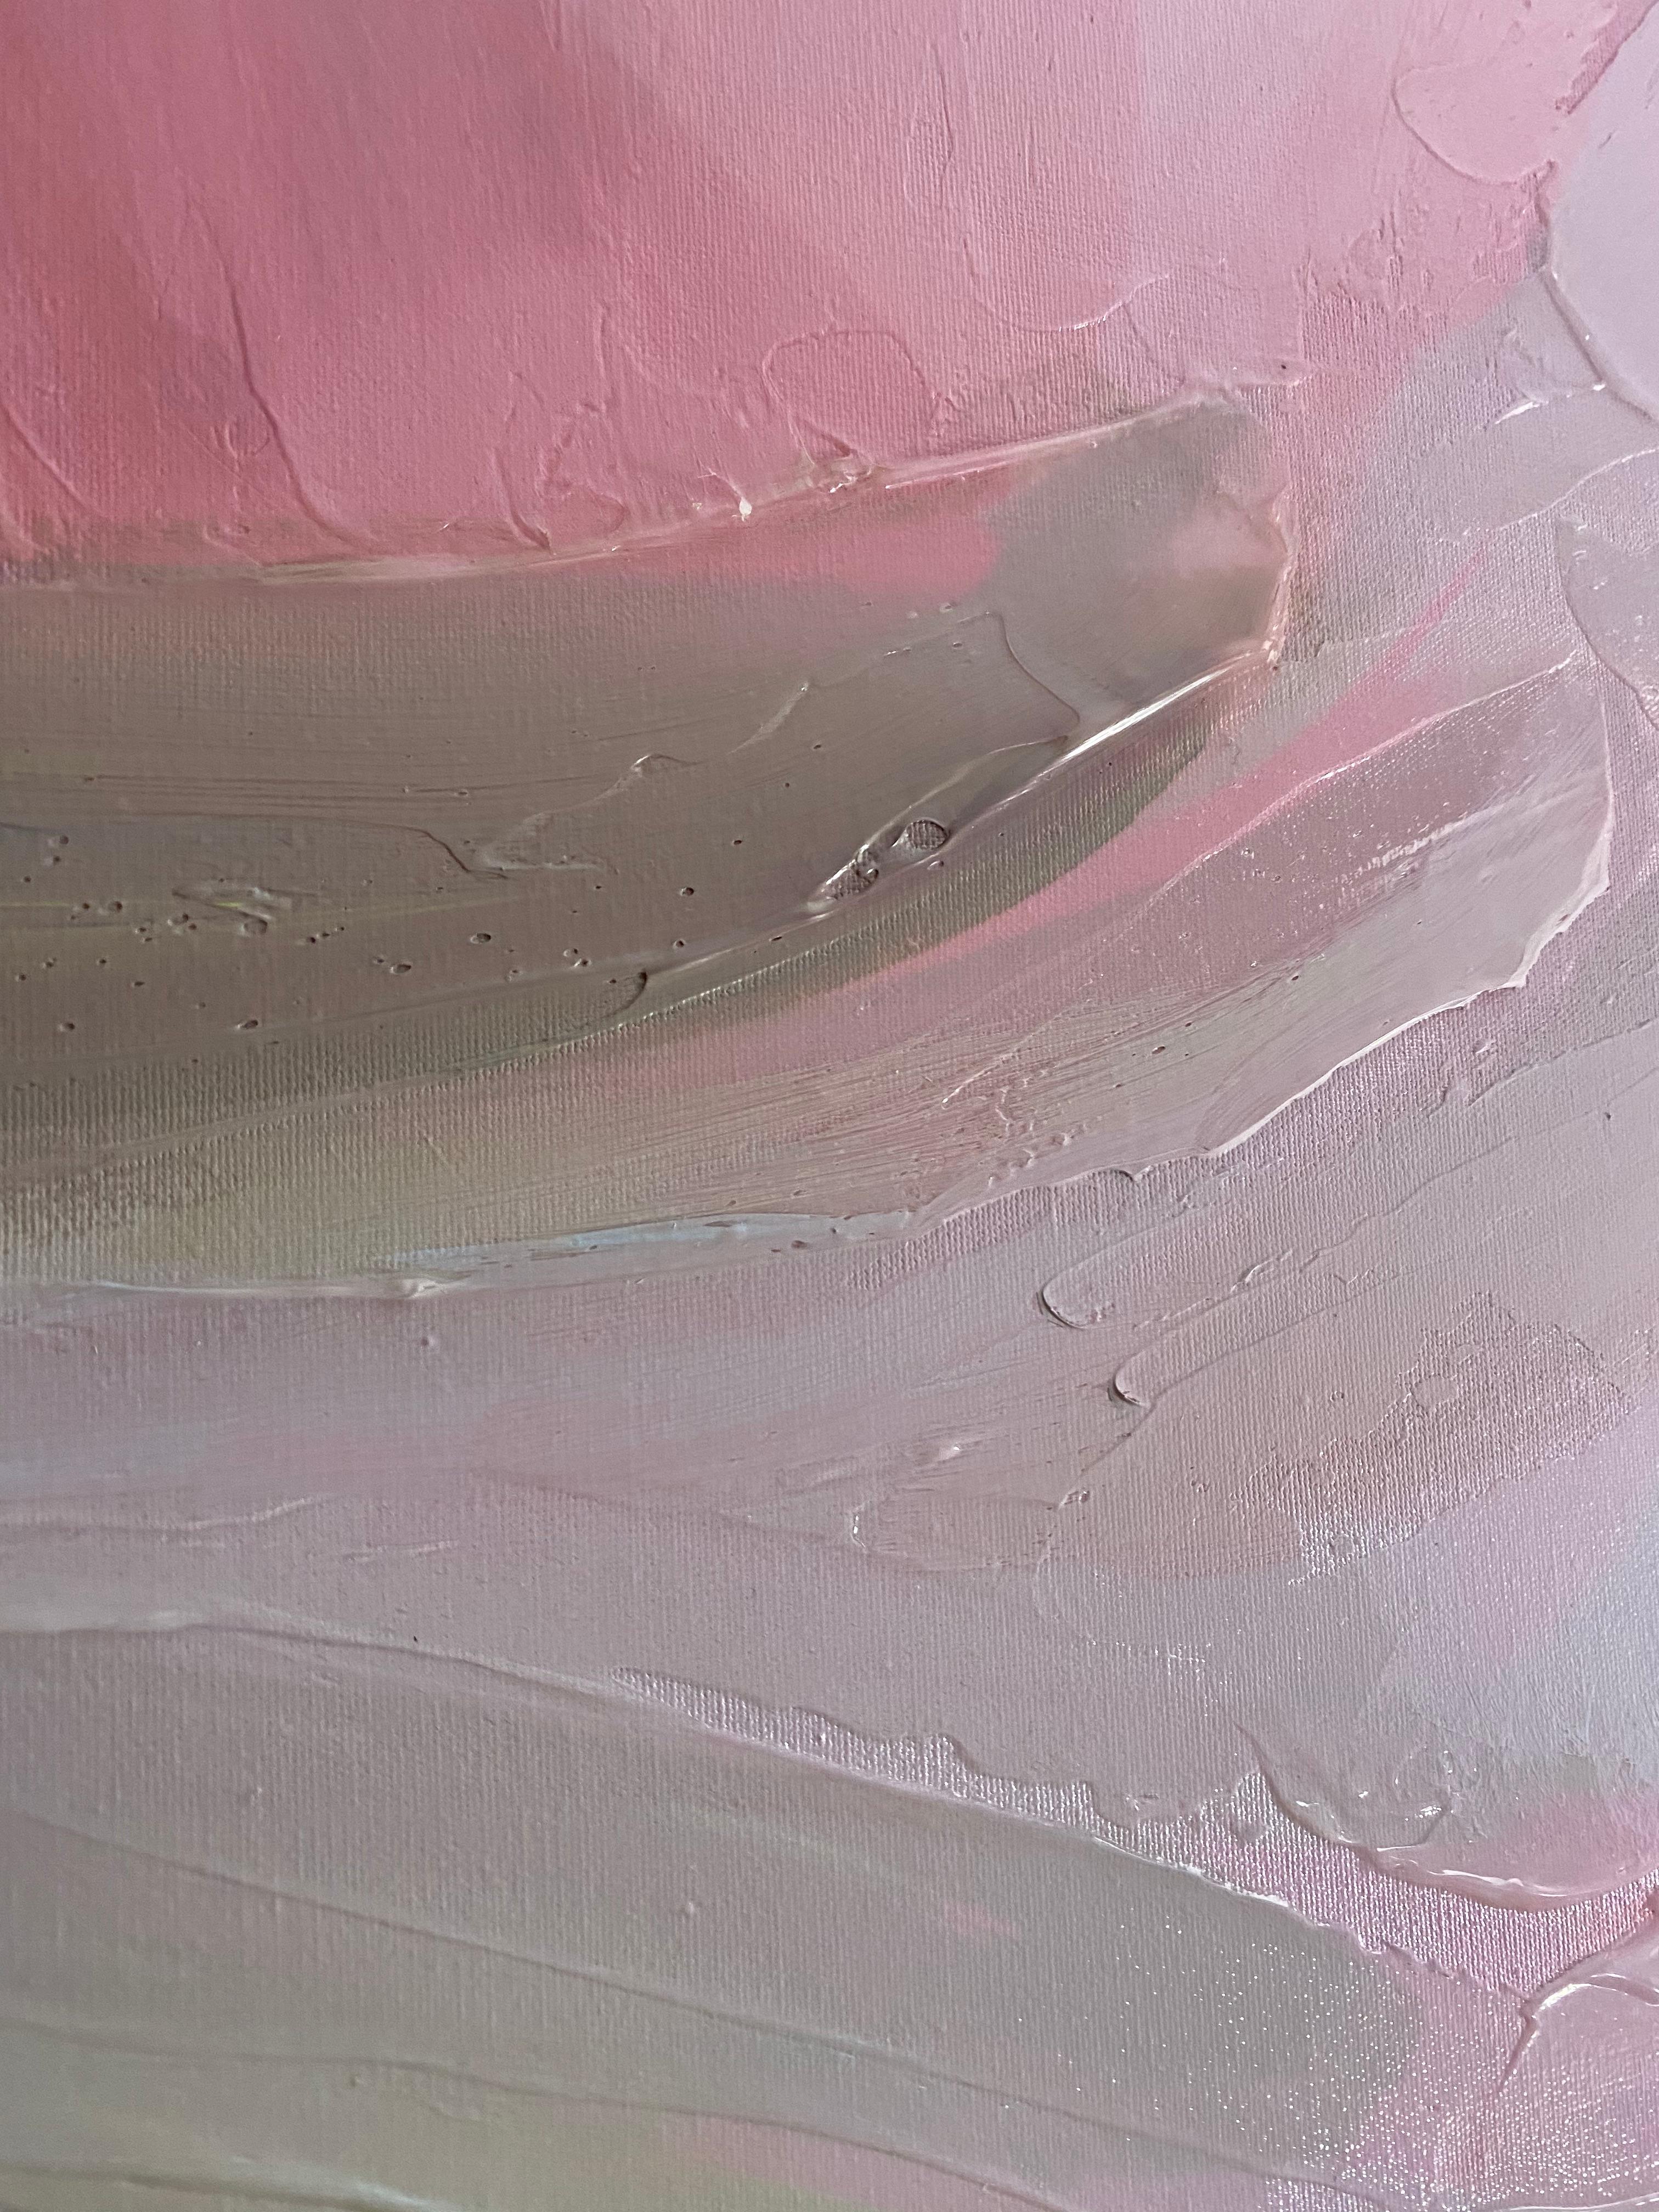 Champagner Abstrakt Pastell Farben Kunst strukturiert Giclee auf Leinwand 40 Hx 60 B